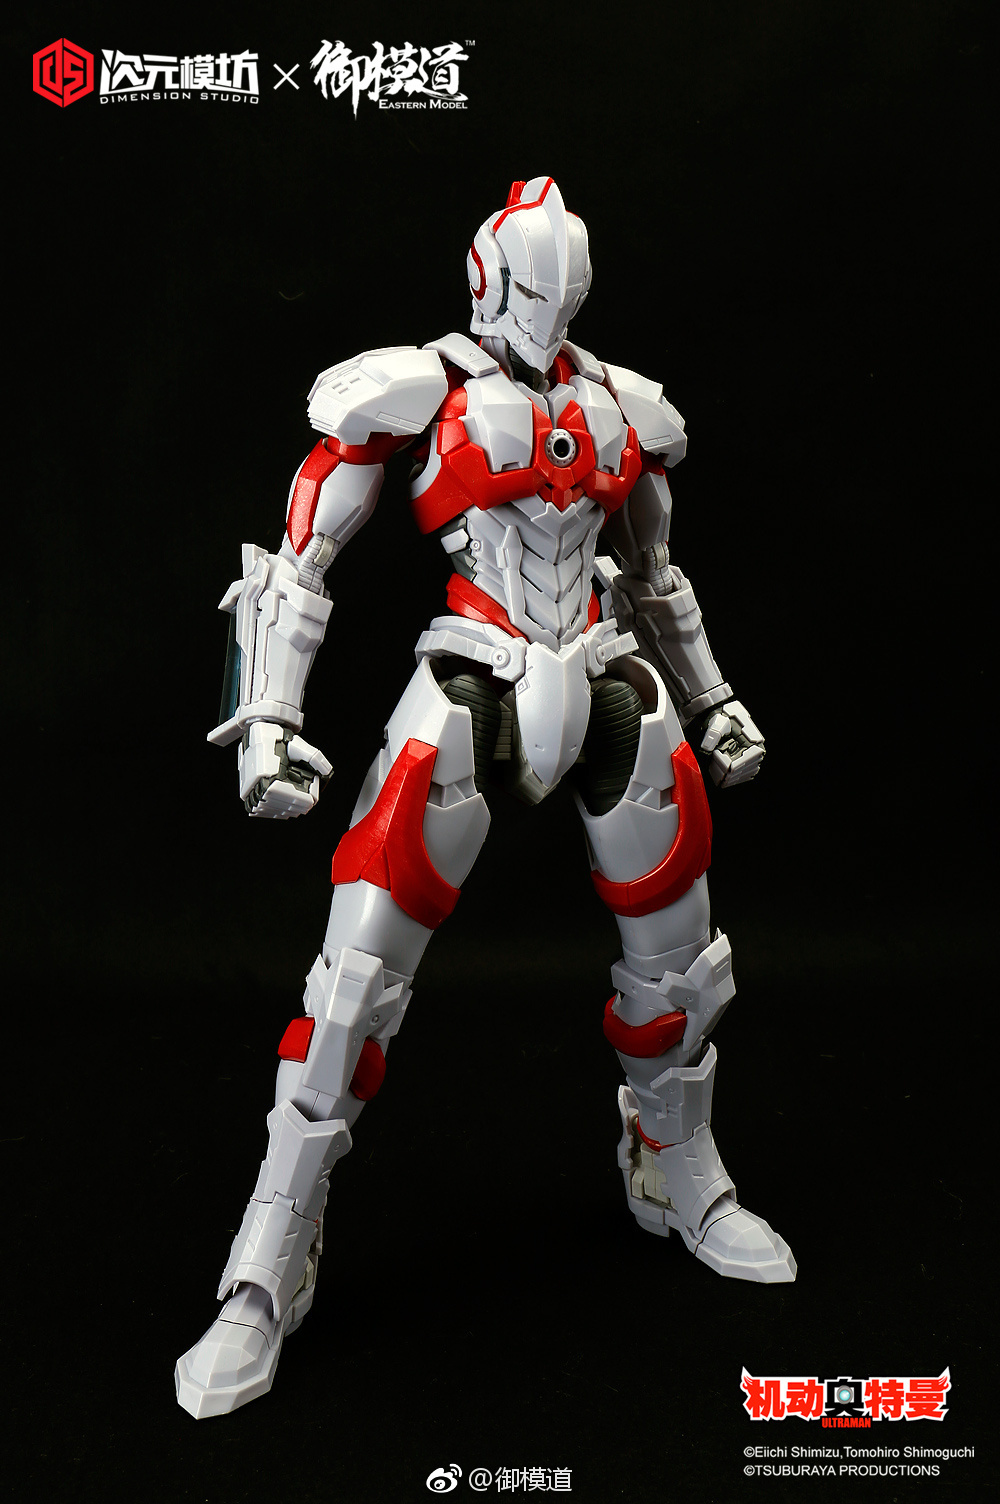 Dimension Studio 1:6 Ultraman ver.Manga Plastic Model Kit